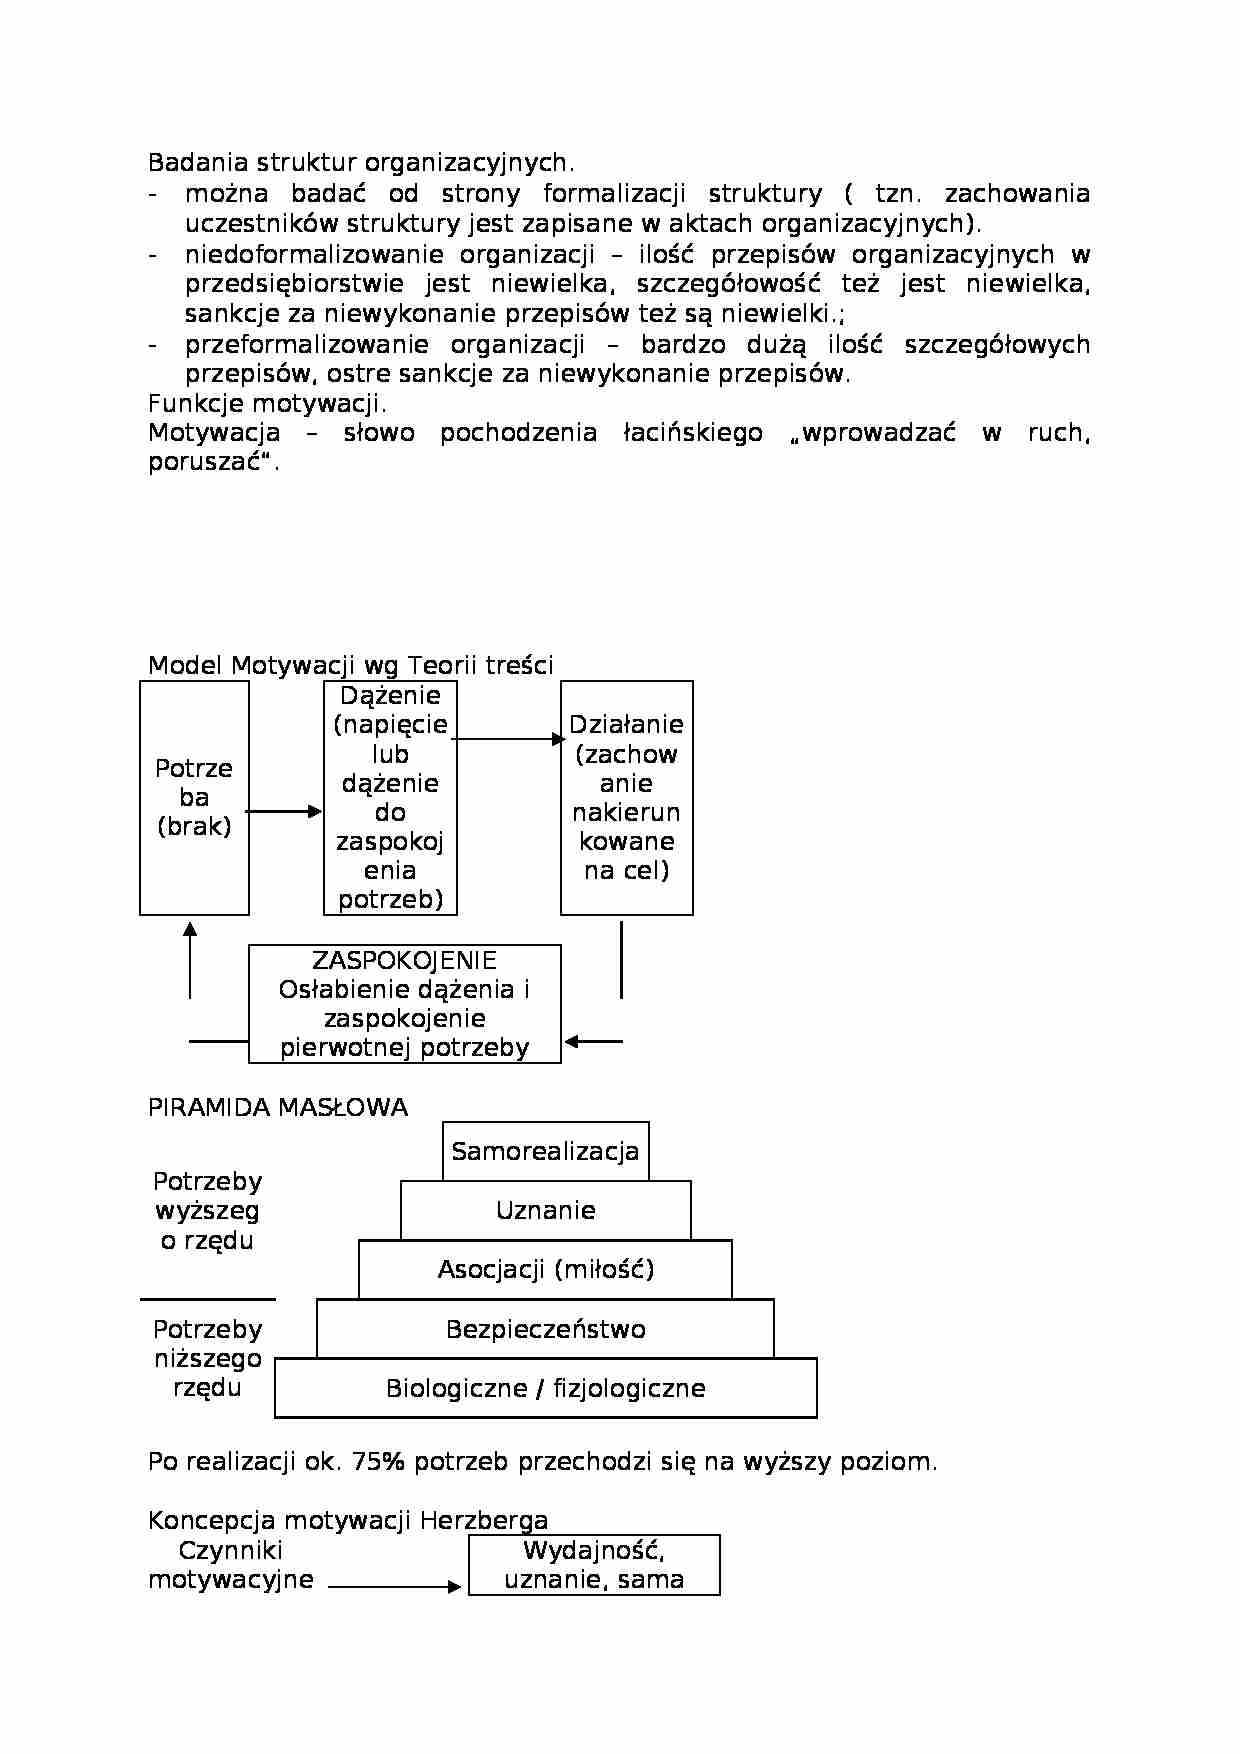 Badania struktur organizacyjnych-opracowanie - strona 1